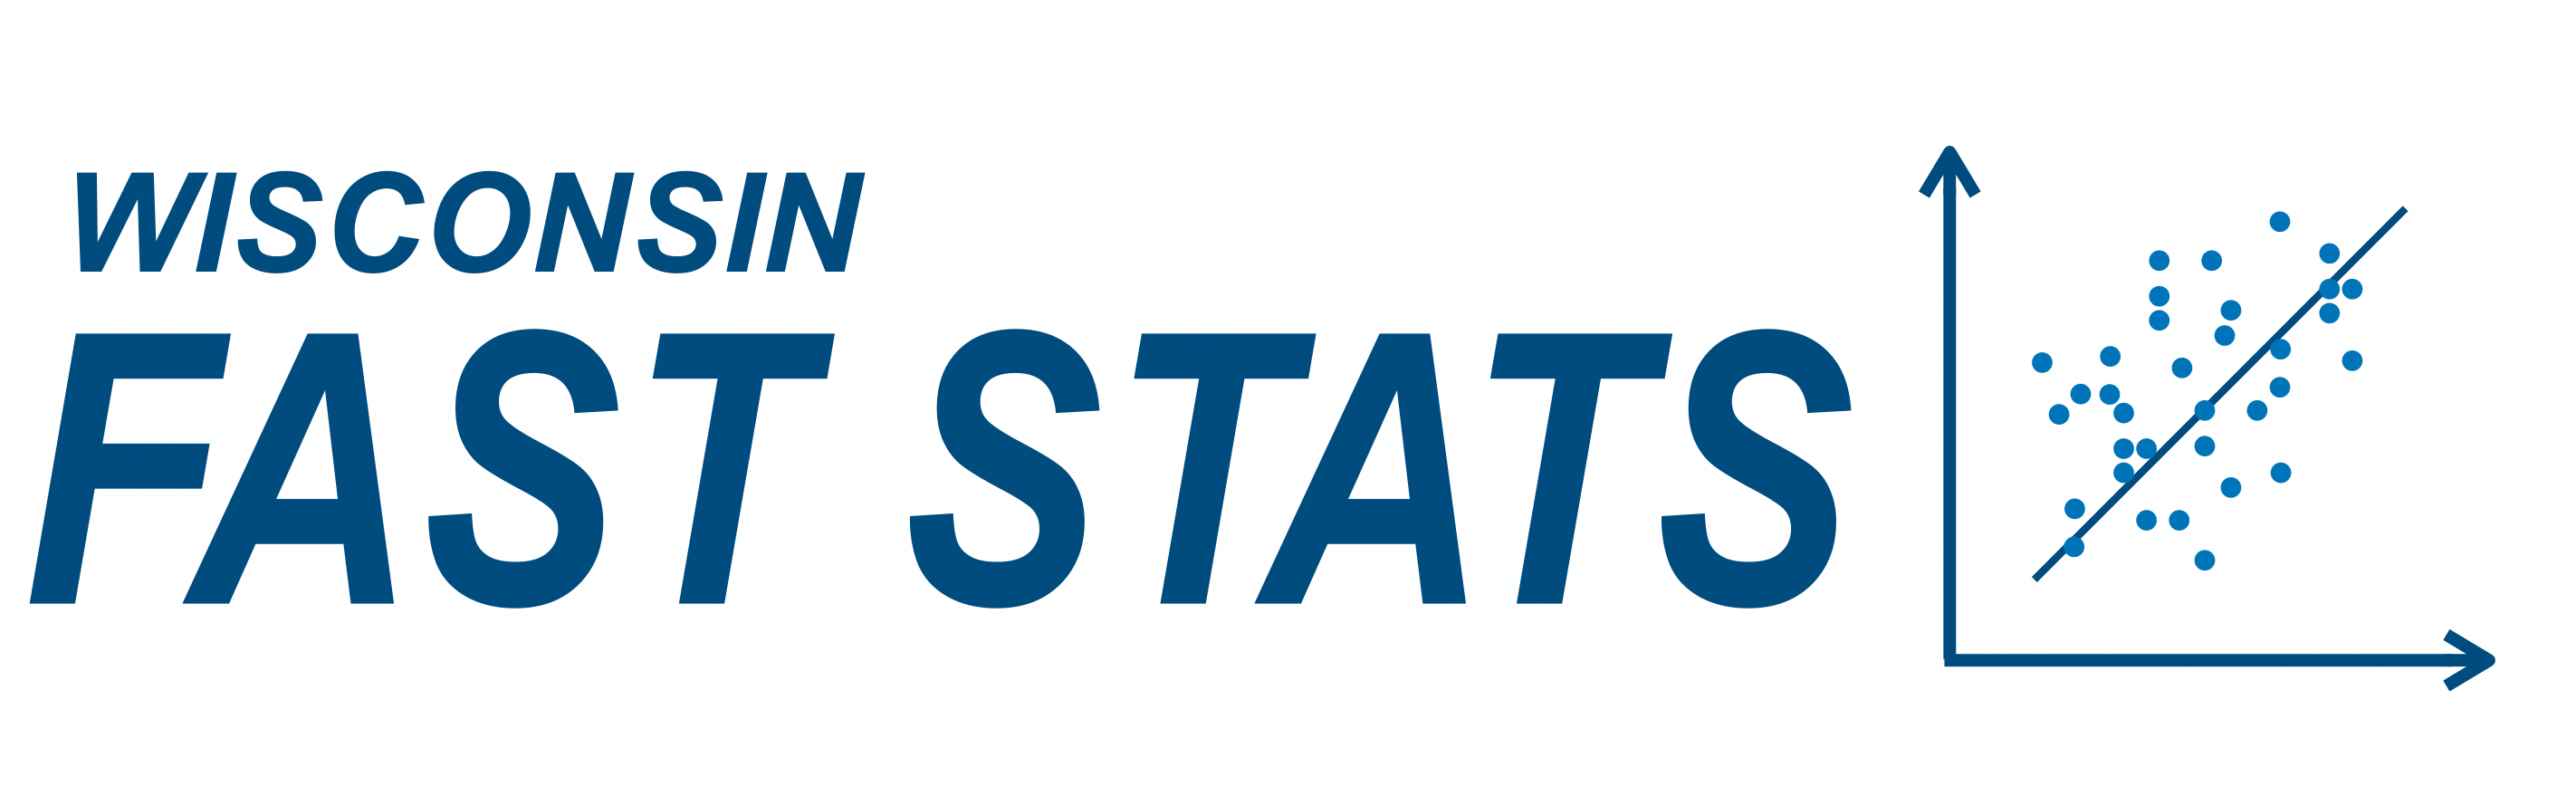 WI-Fast-Stats